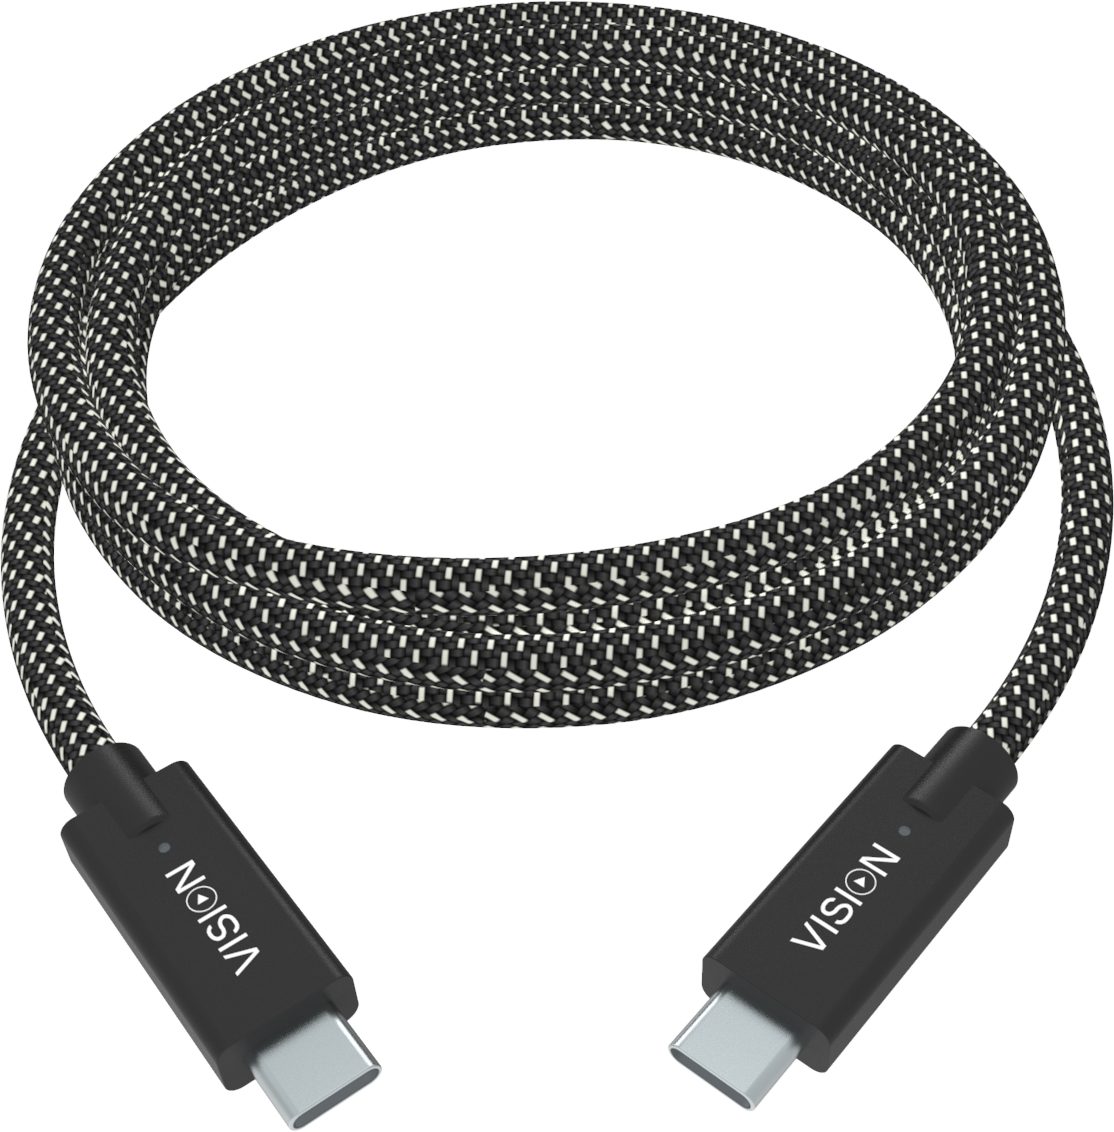 An image showing  Câble tressé de qualité supérieure USB 2.0  professionnel